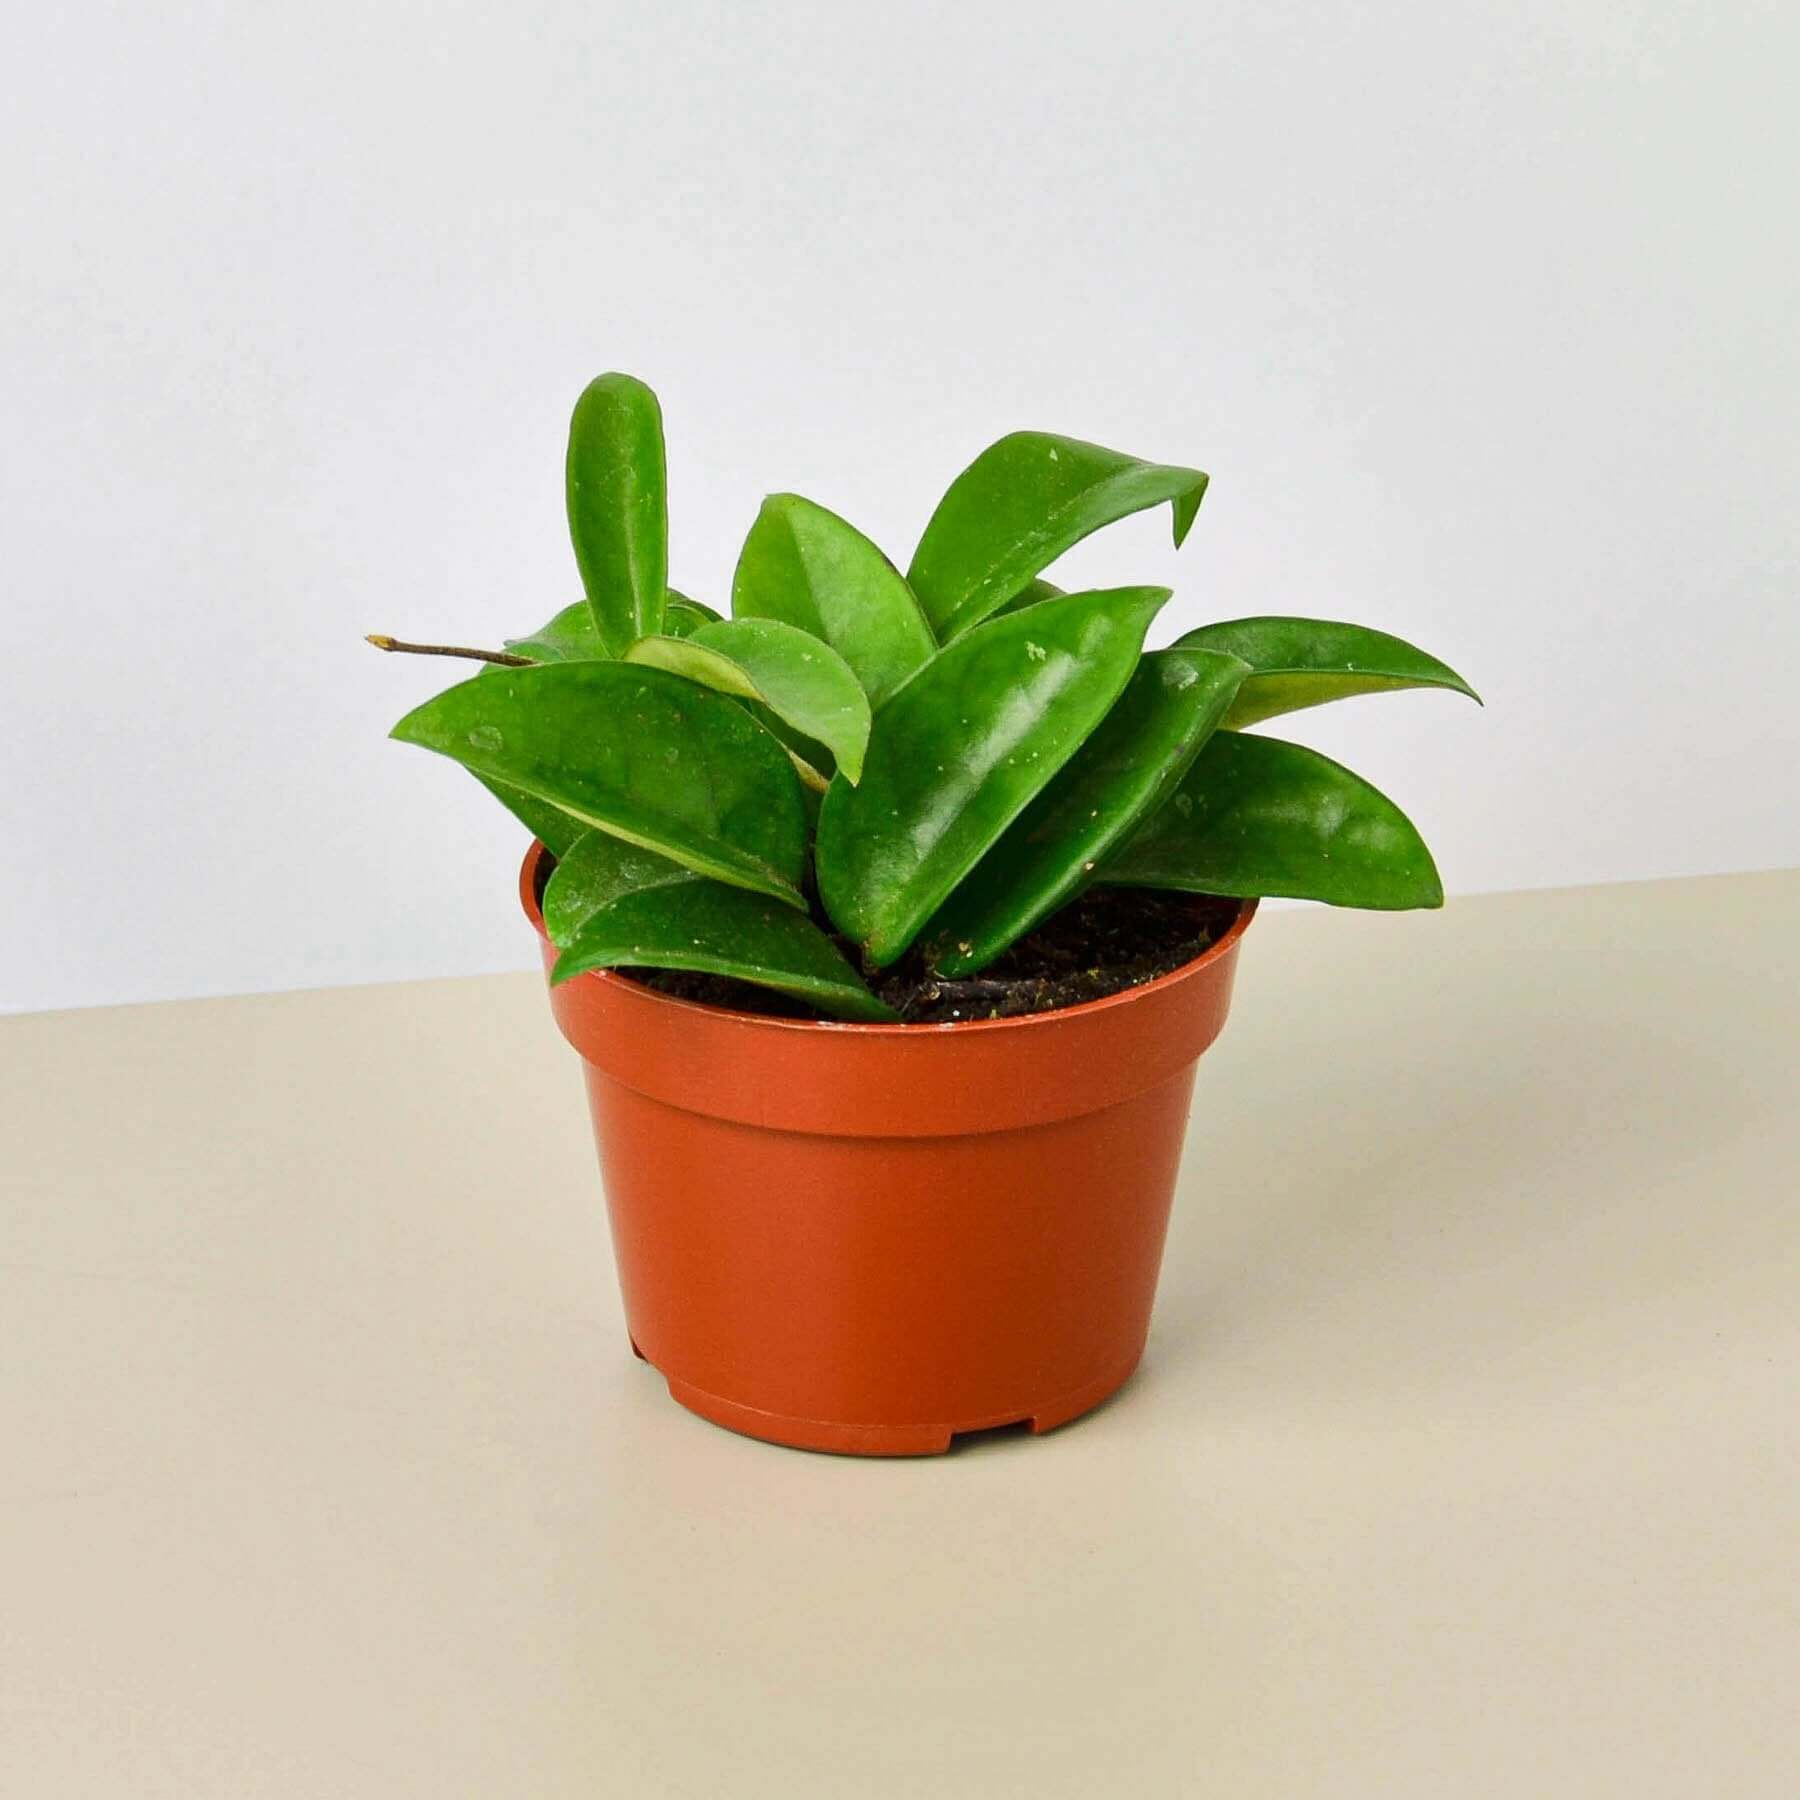 Hoya Carnosa | Modern house plants that clean the air